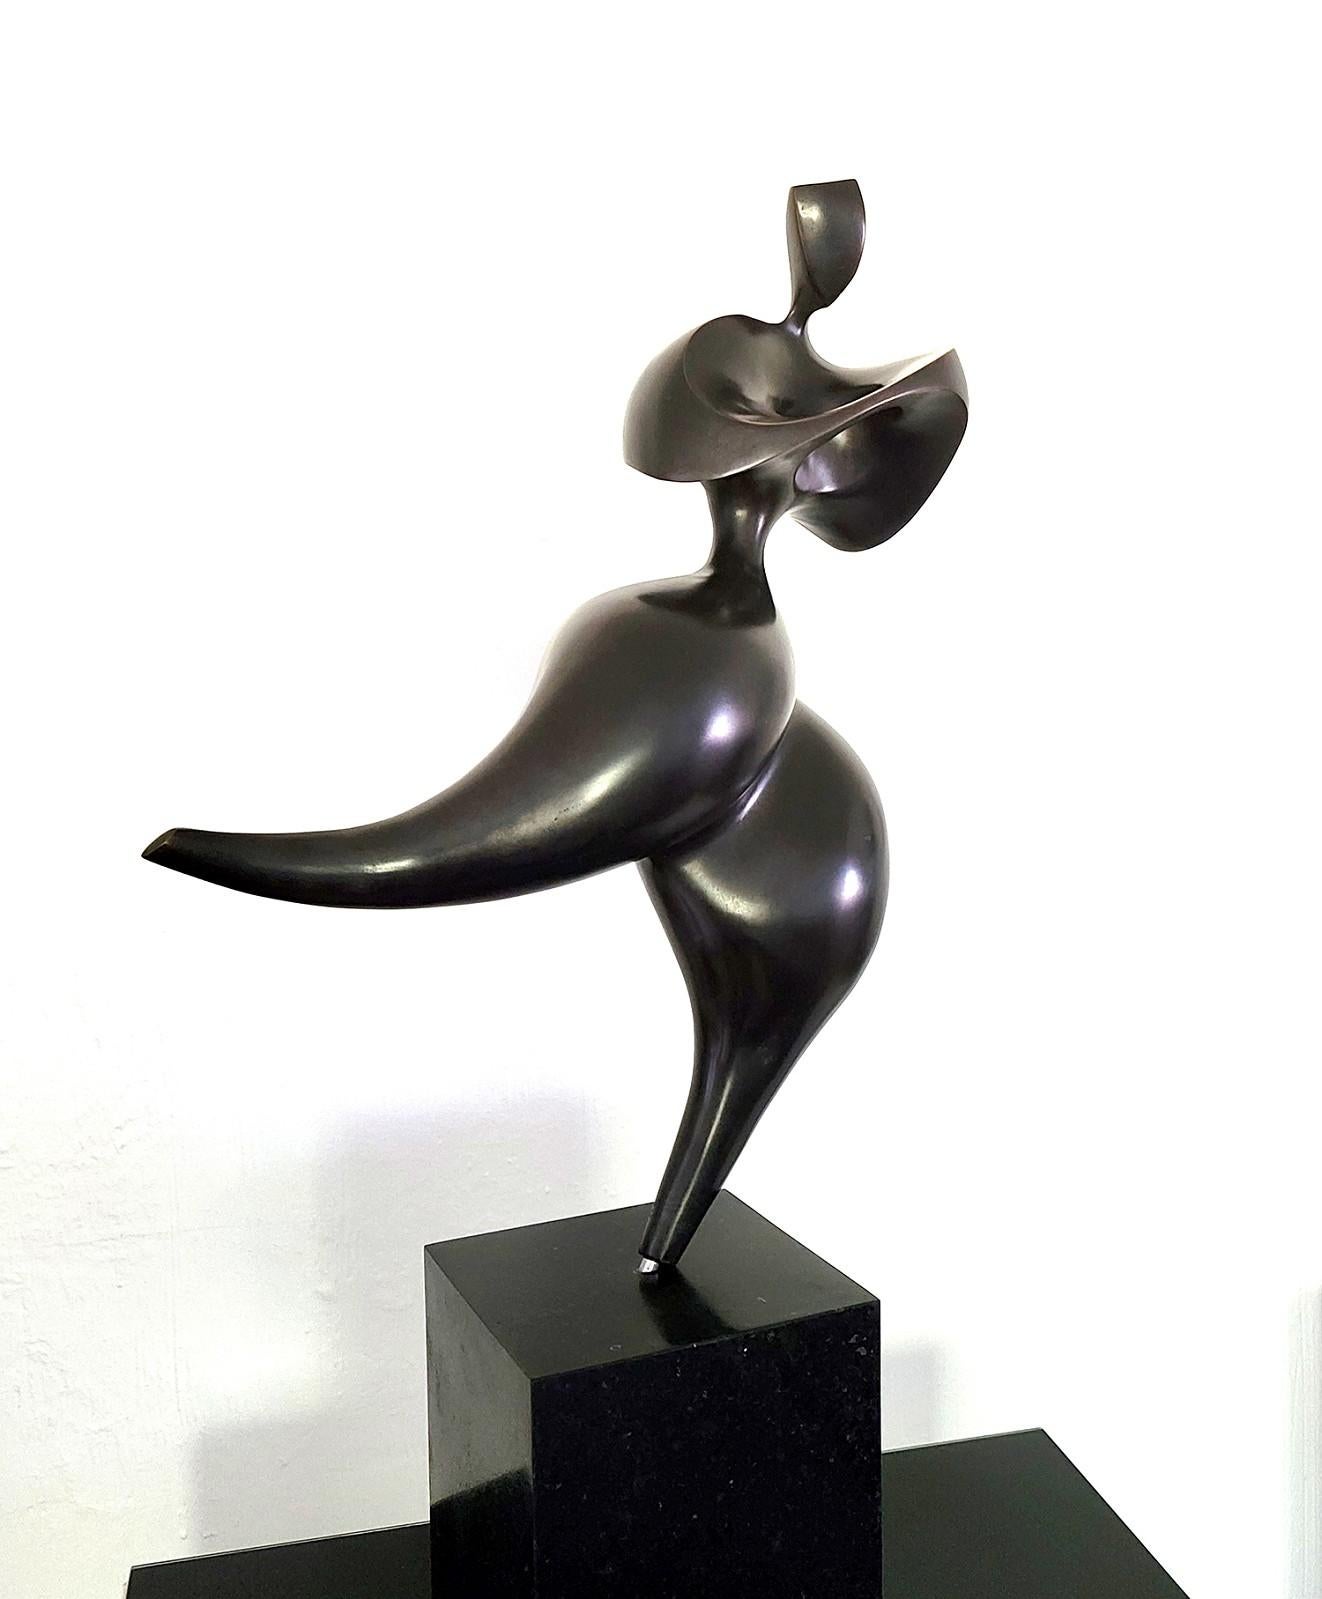 Solstice Ed 1/12, élégante, féminine, figurative, sculpture en bronze - Sculpture de Jeremy Guy